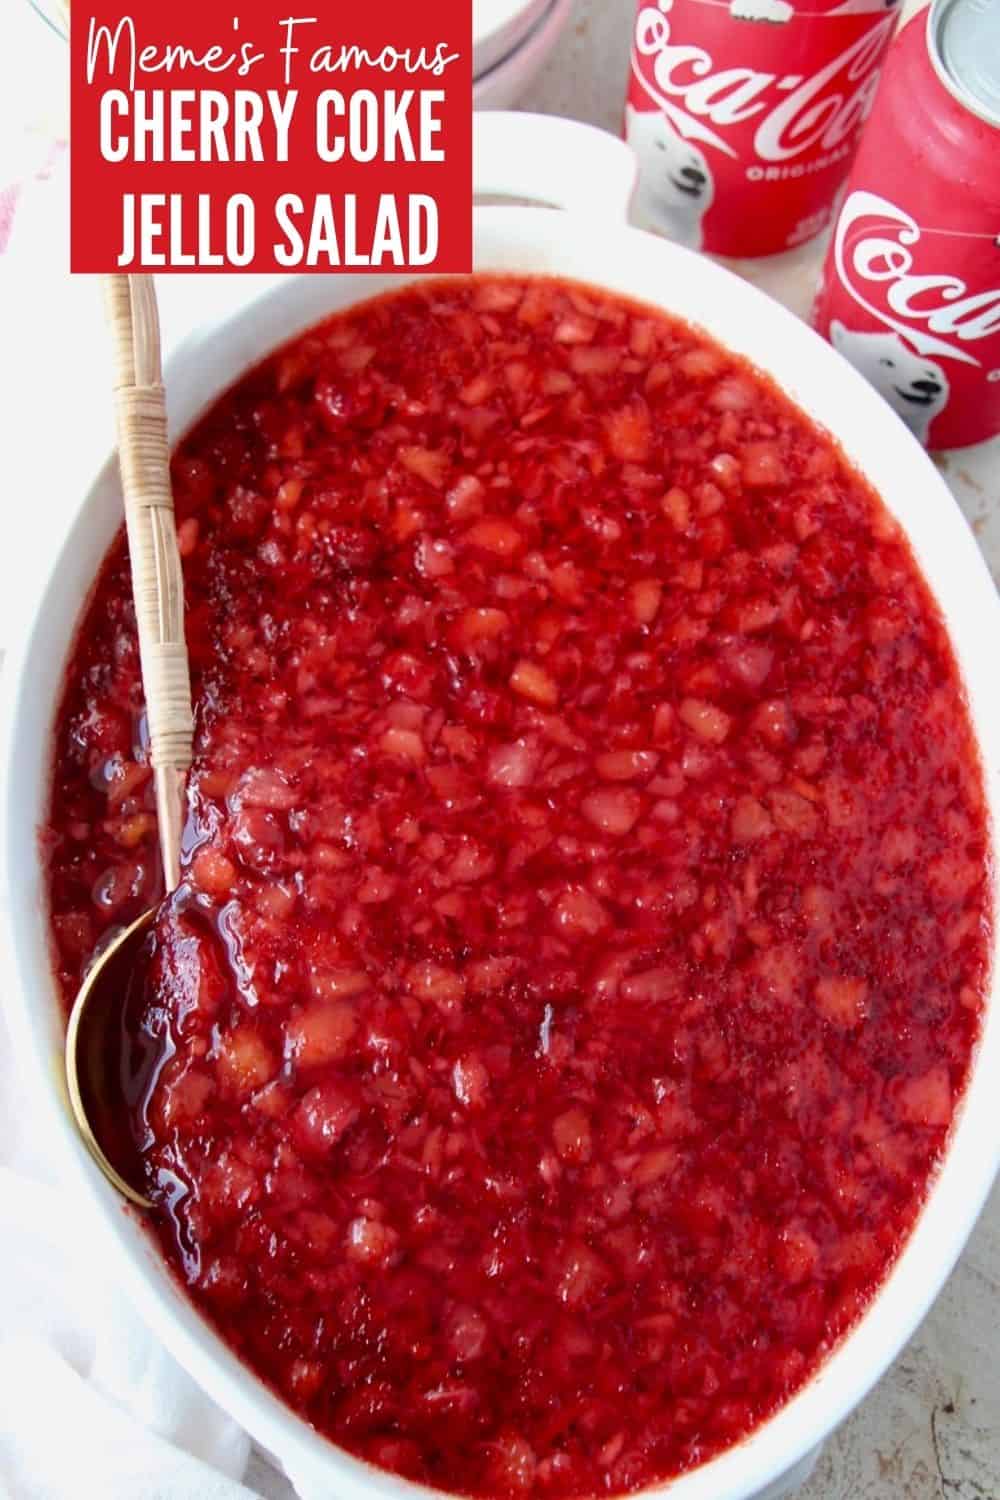 Cherry Coke Jello Salad Grandma Memes Recipe 